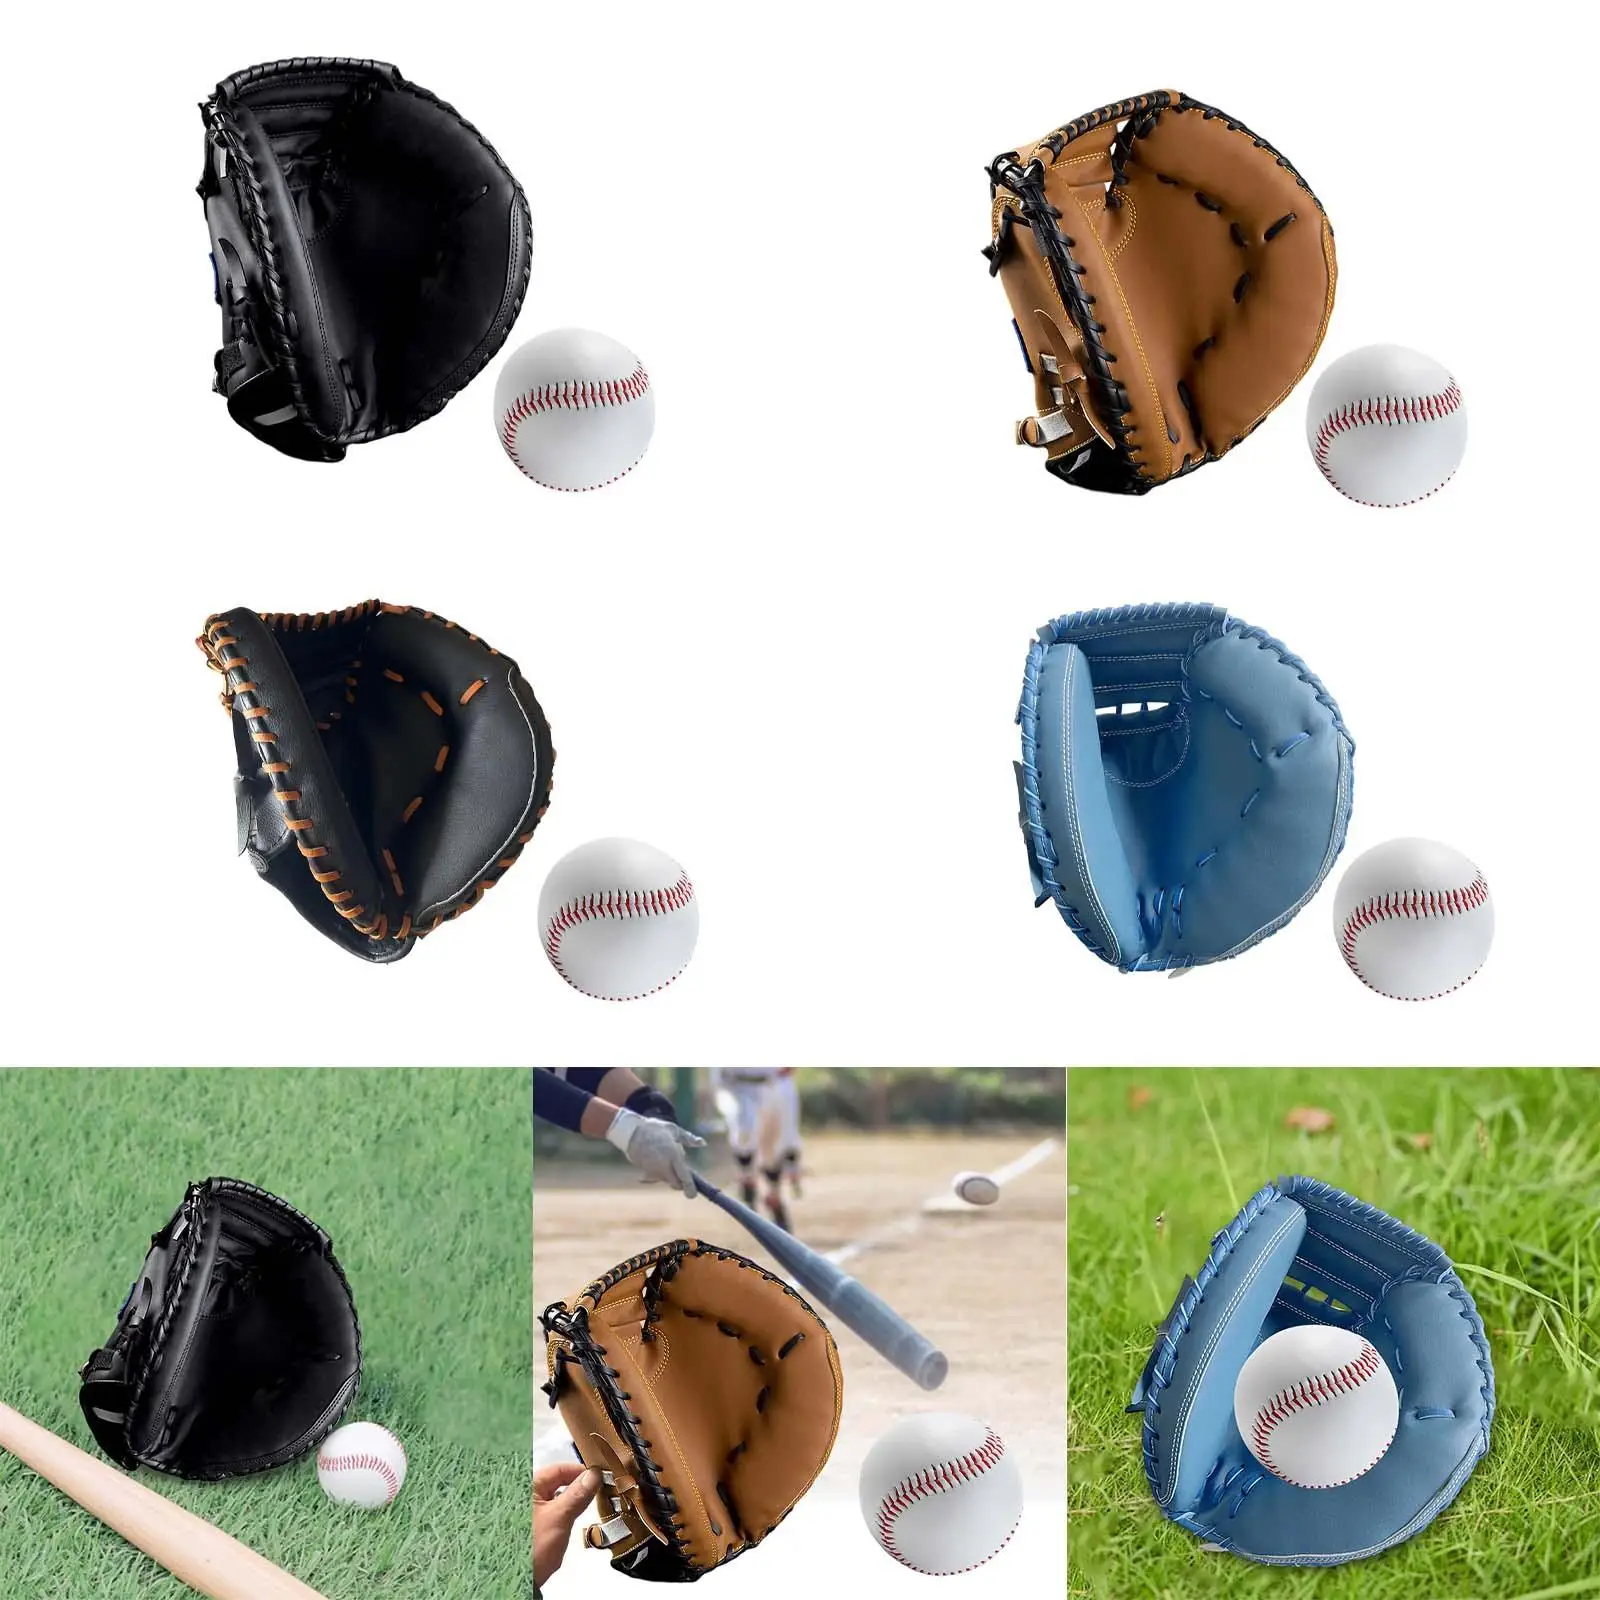 Baseball Catcher Gloves PU Professional Left Hand Sports Batting Gloves for Practice Equipment Training Exercise Unisex Beginner